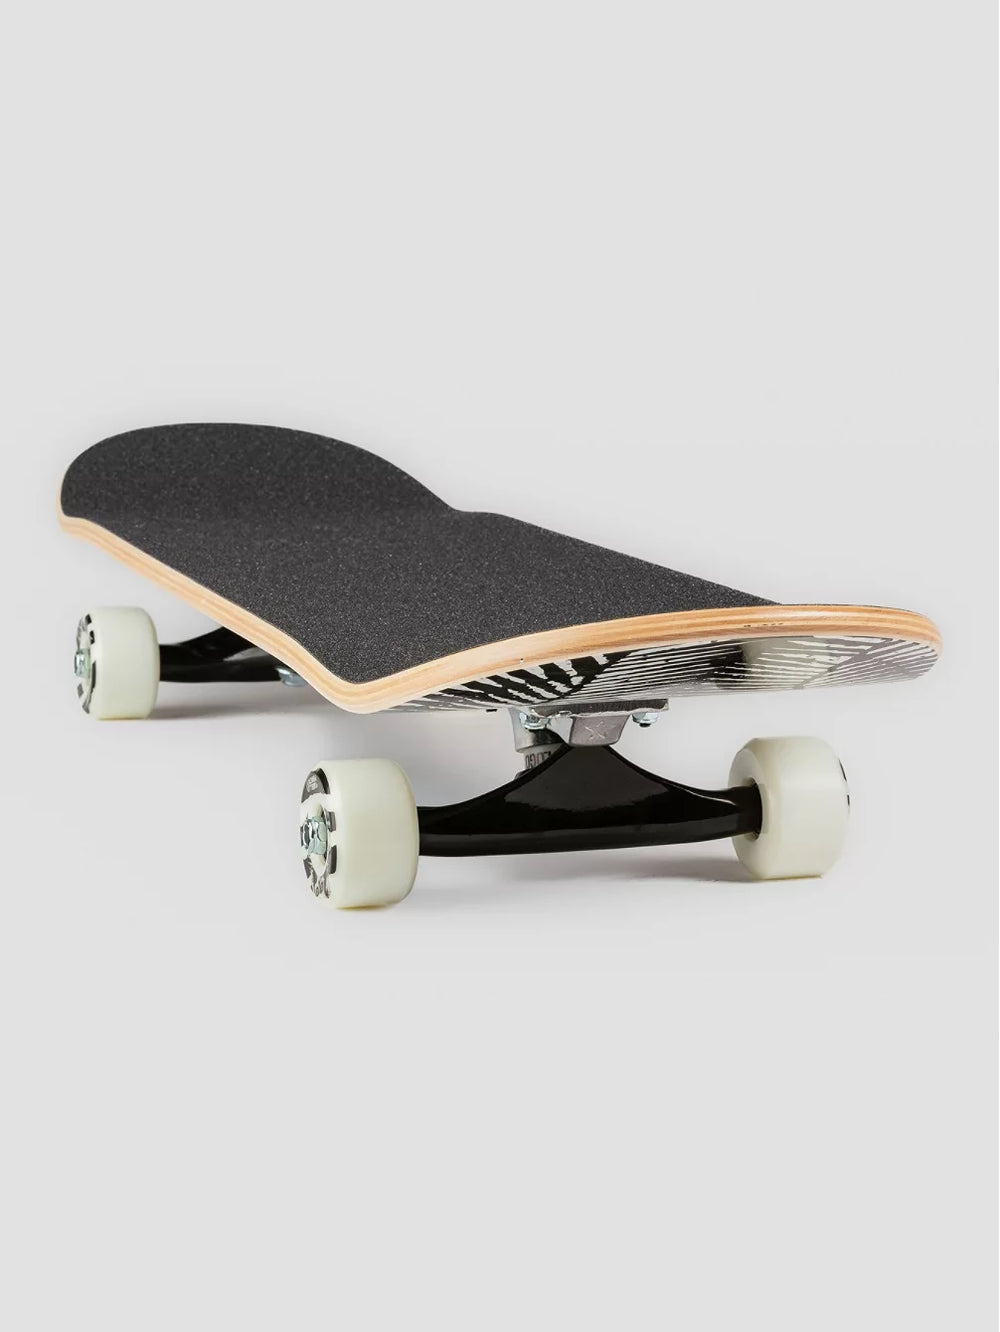 Powell Peralta Ripper 7.75" Skateboard Completo